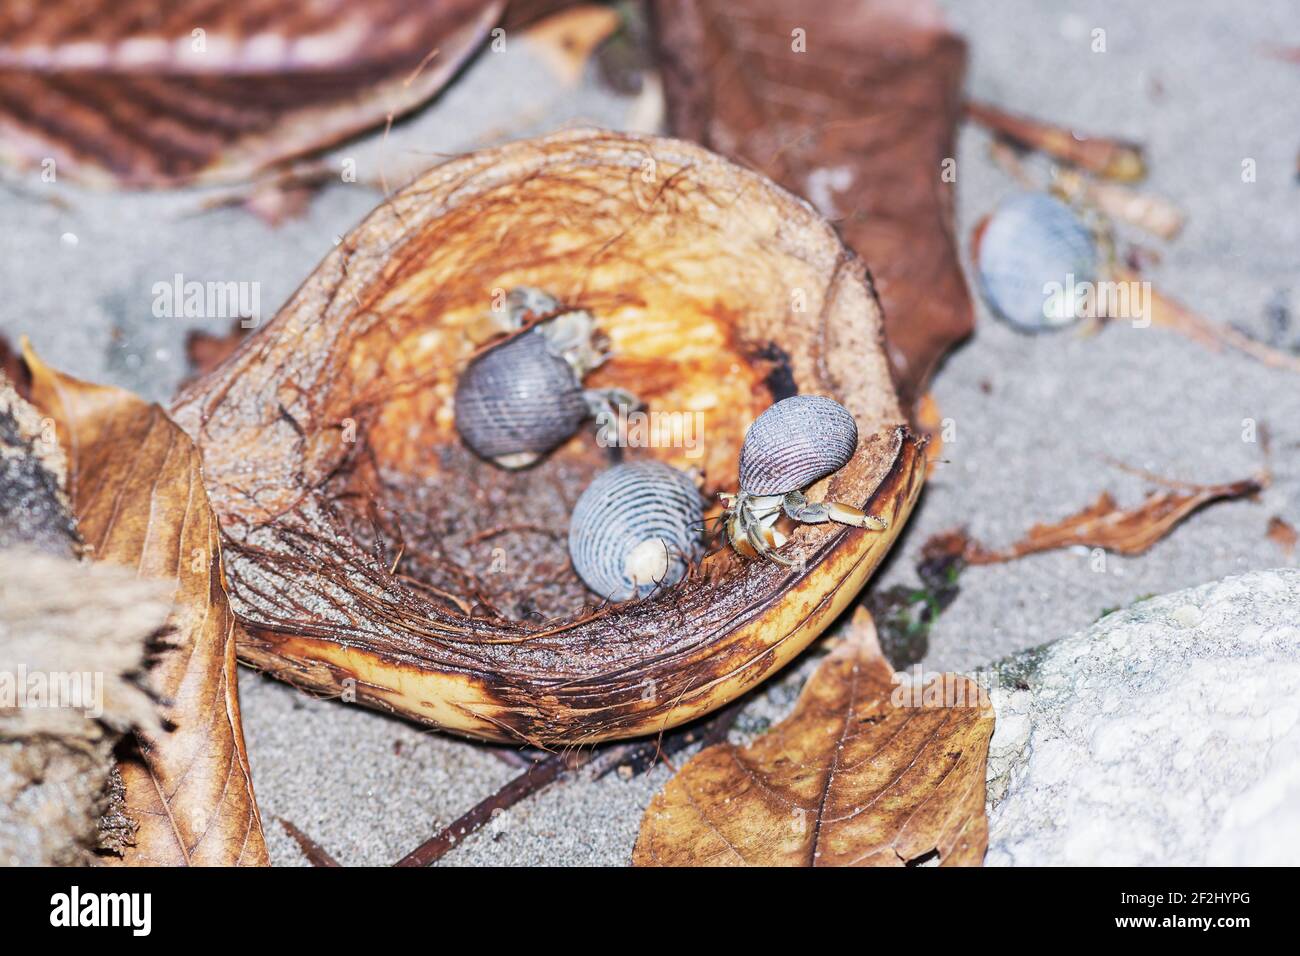 Grupo de cangrejo ermitaños (Paguroidea) comiendo coco, Parque Nacional Manuel Antonio, Provincia de Puntarenas, Costa Rica. Foto de stock